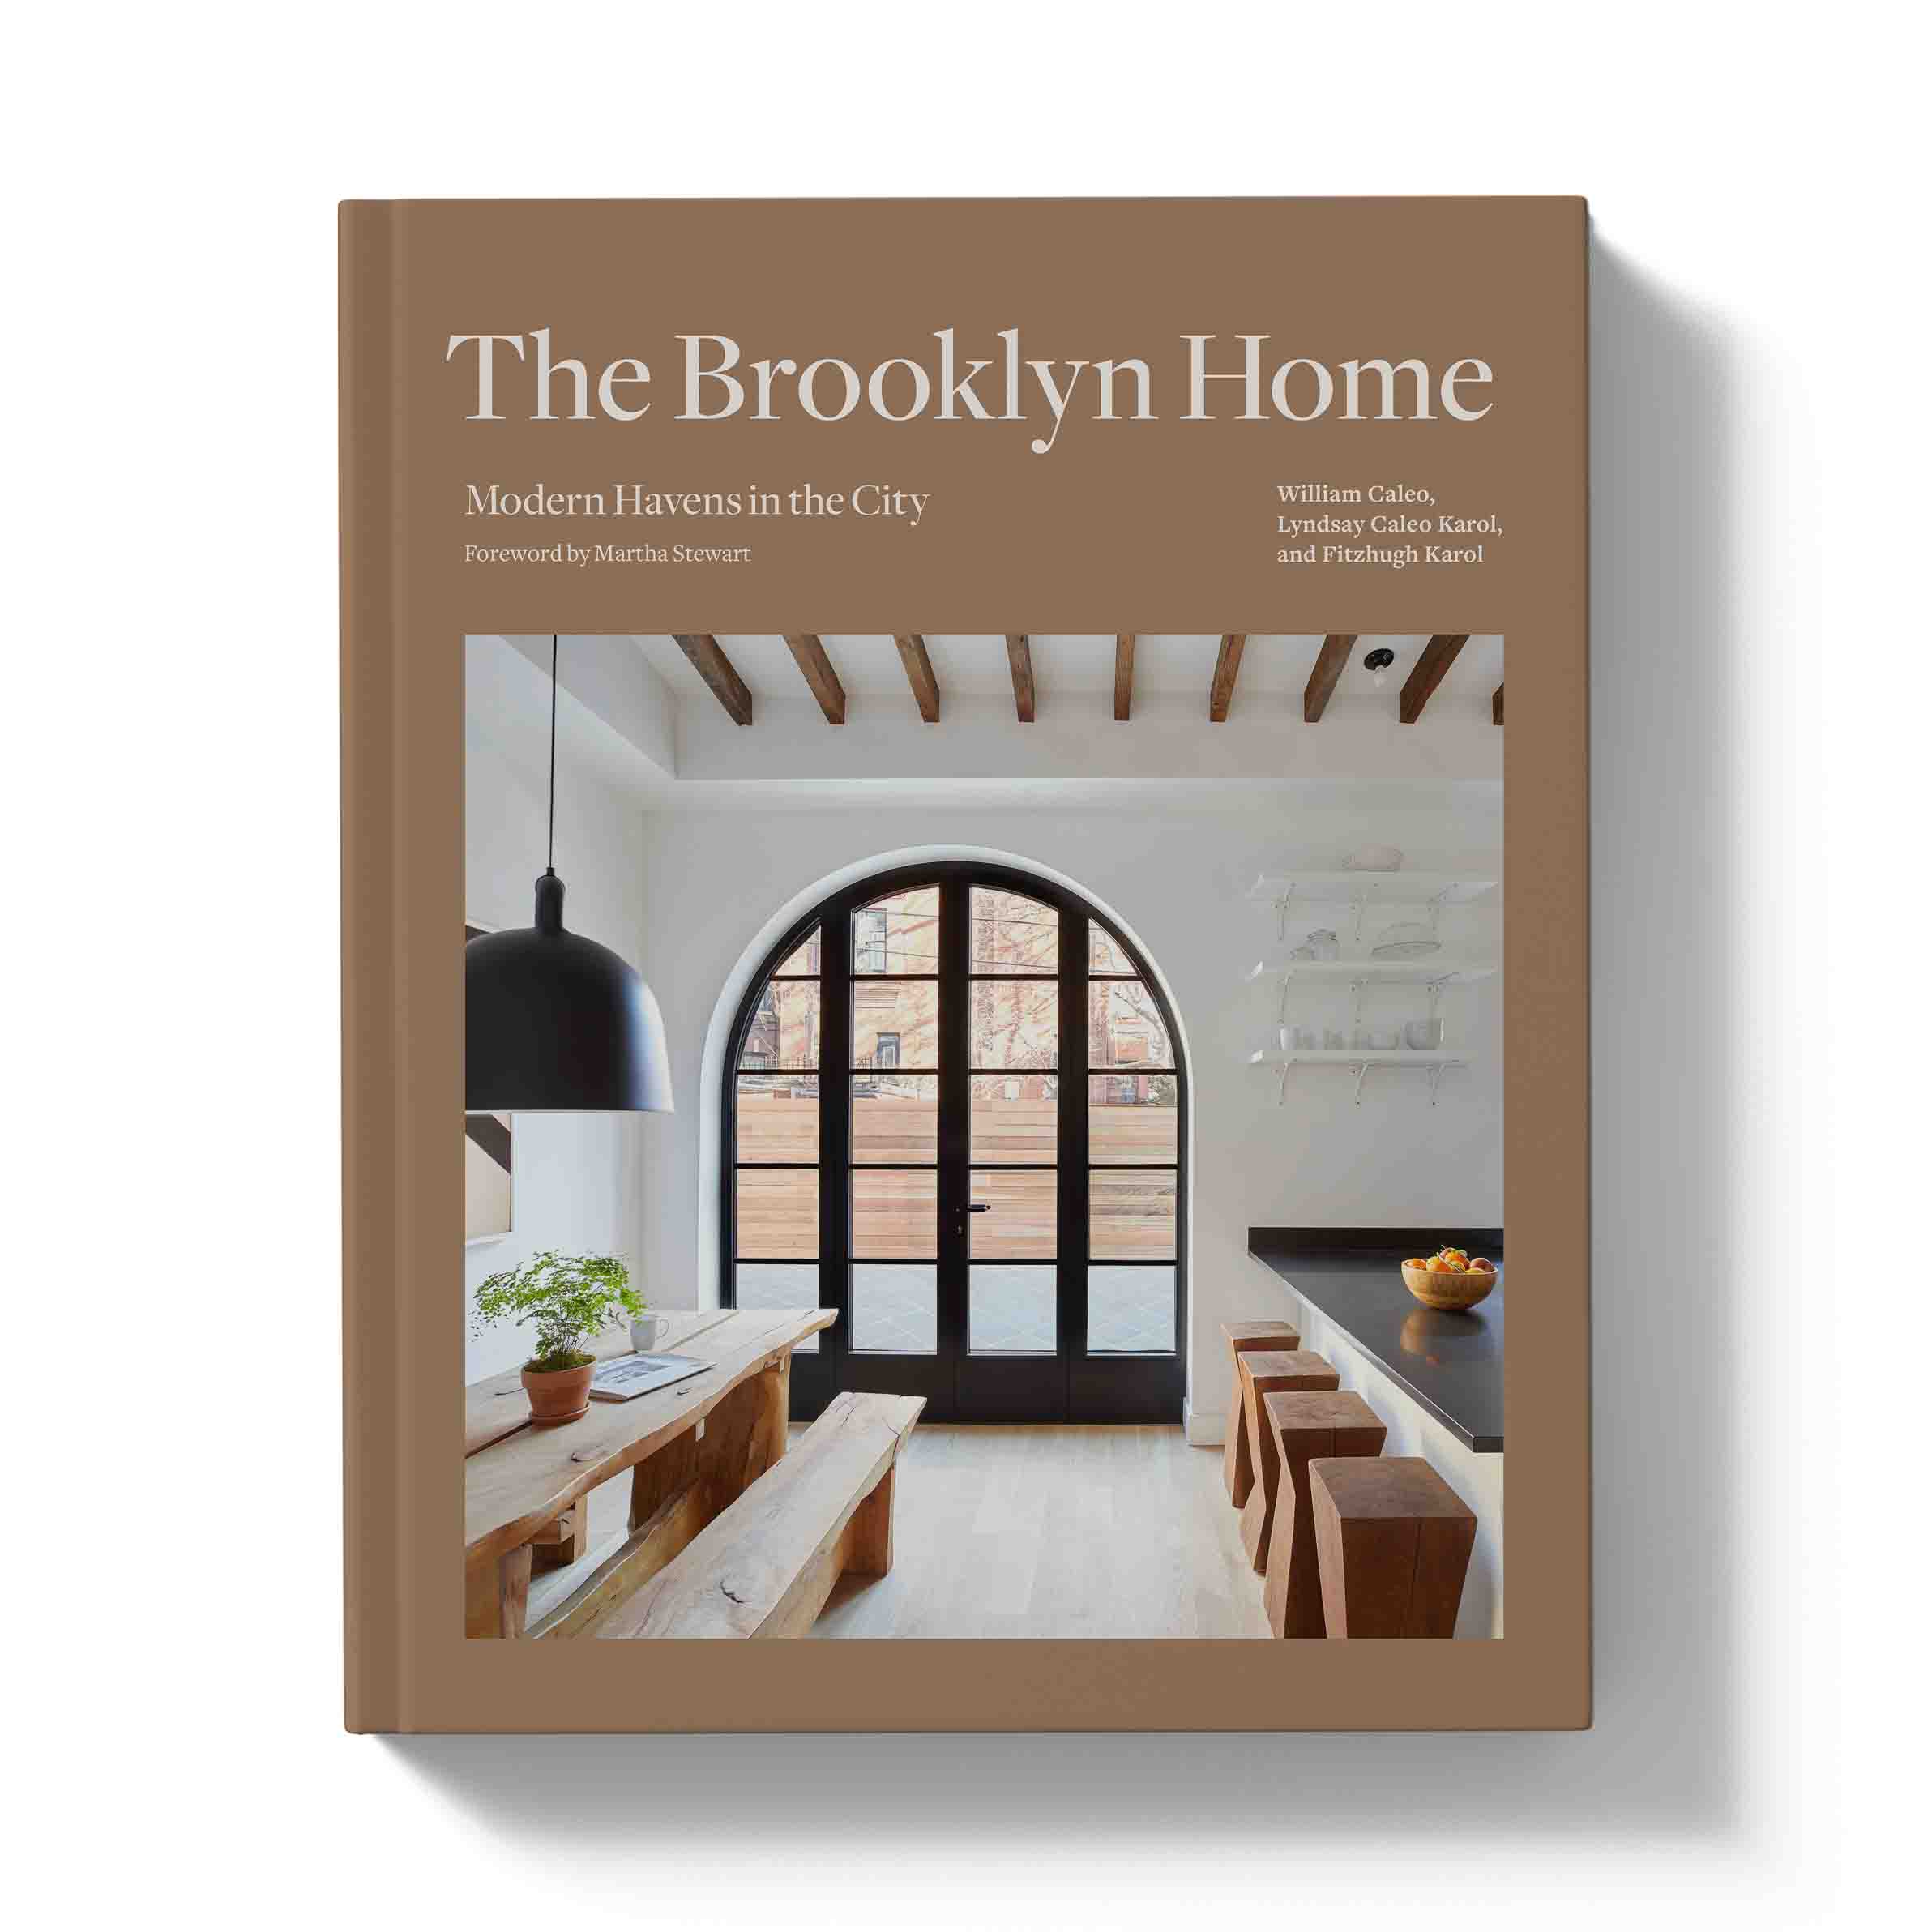 The Brooklyn home